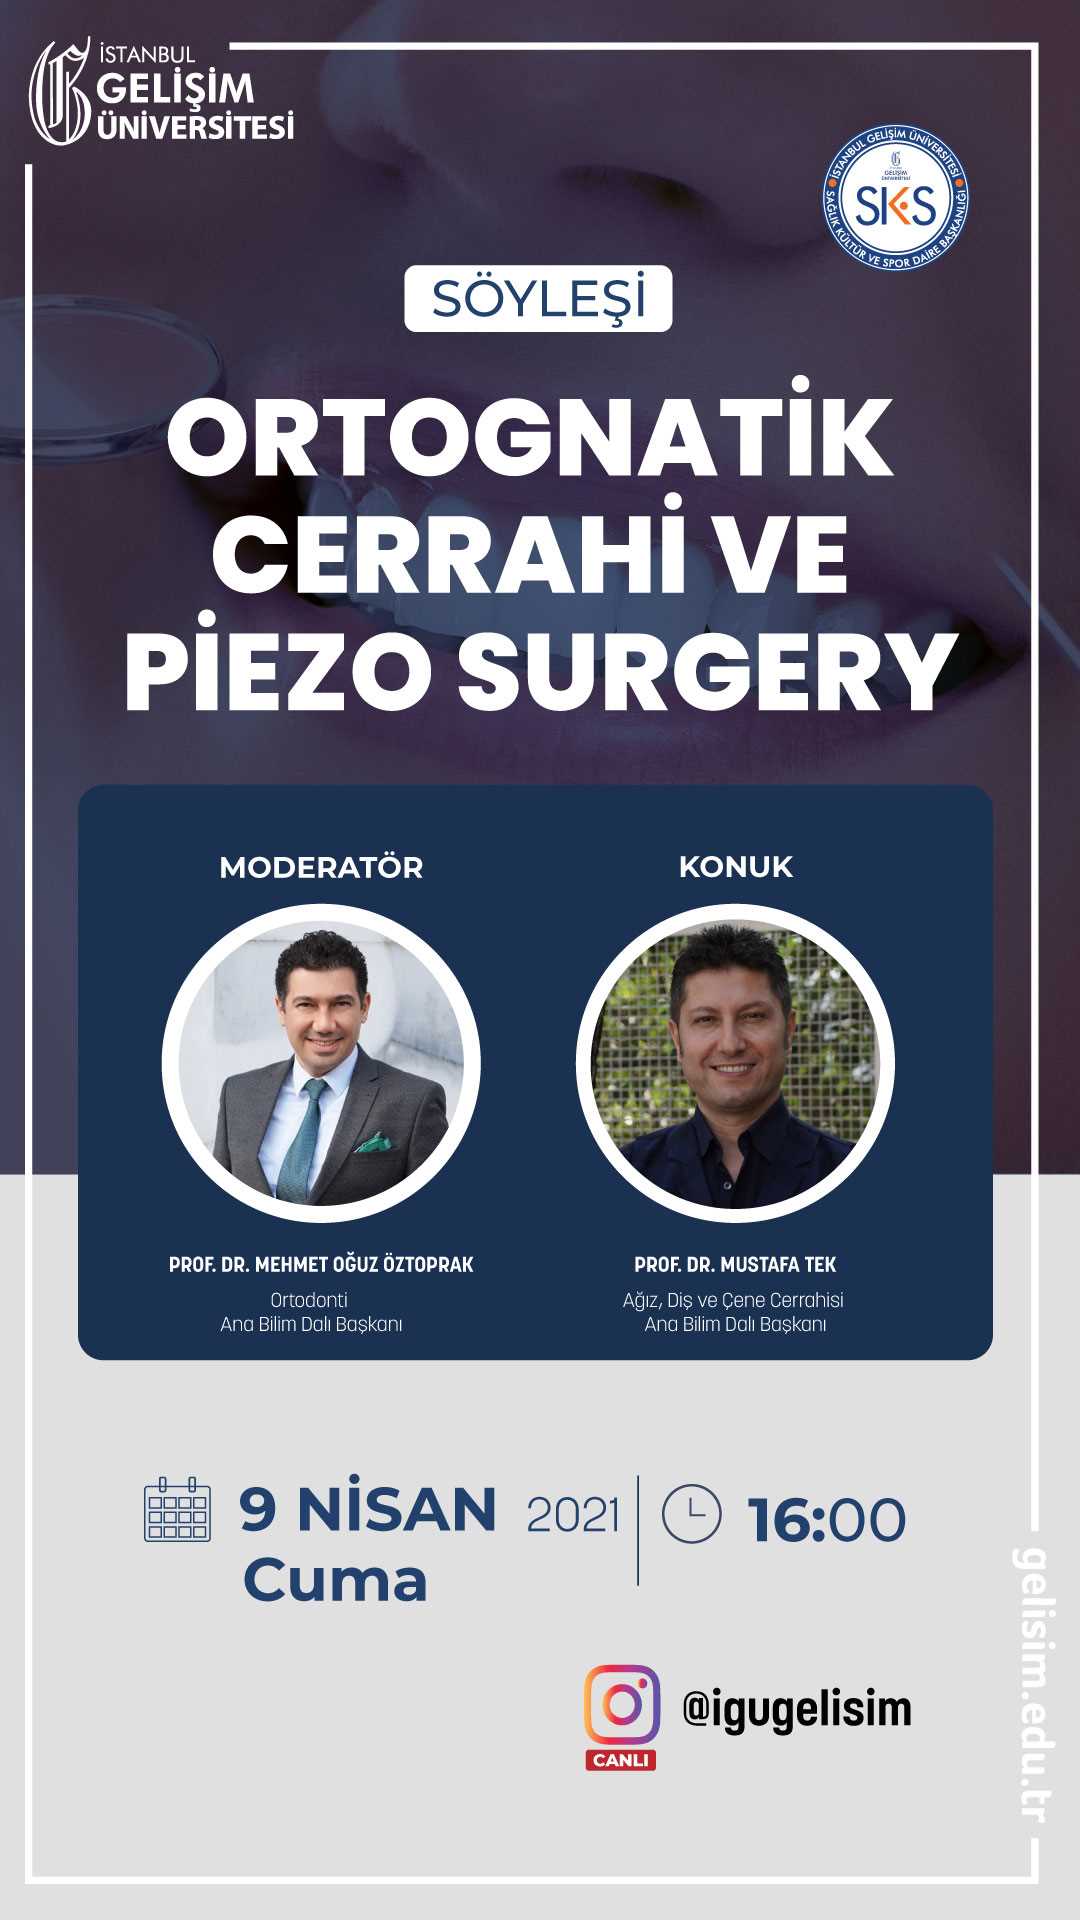 Ortognatik Cerrahi ve Piezo Surgery